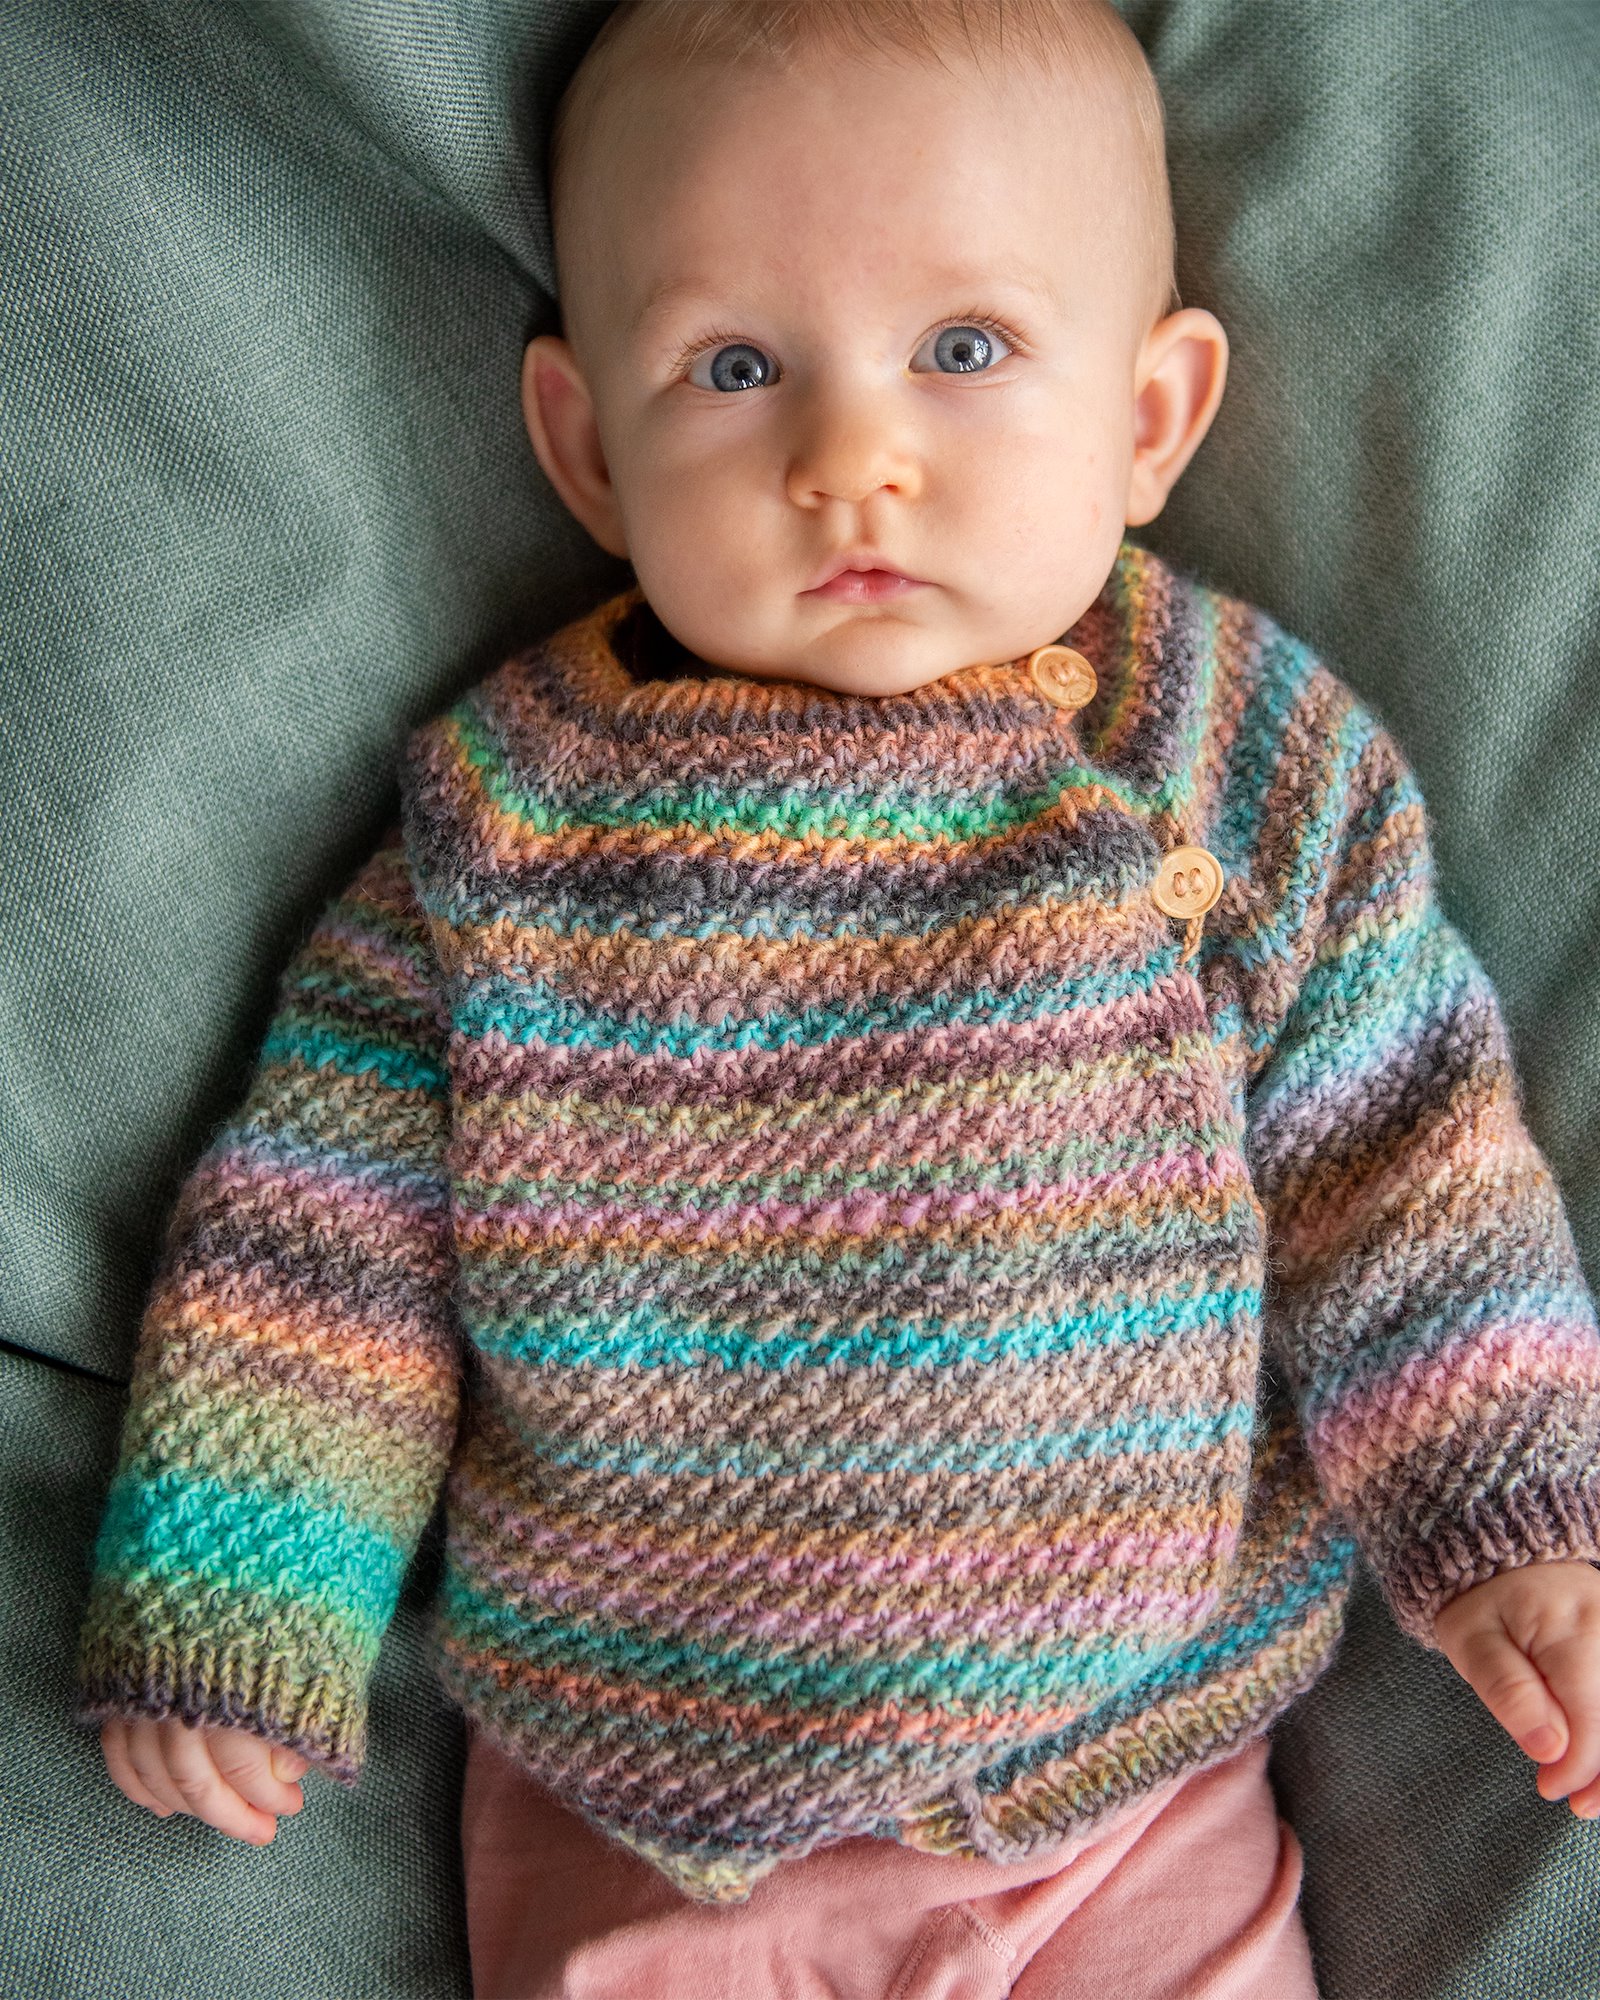 FRAYA knitting pattern - Wool You Love Me Cardigan, kids & babies - Playful Version FRAYA6038.jpg